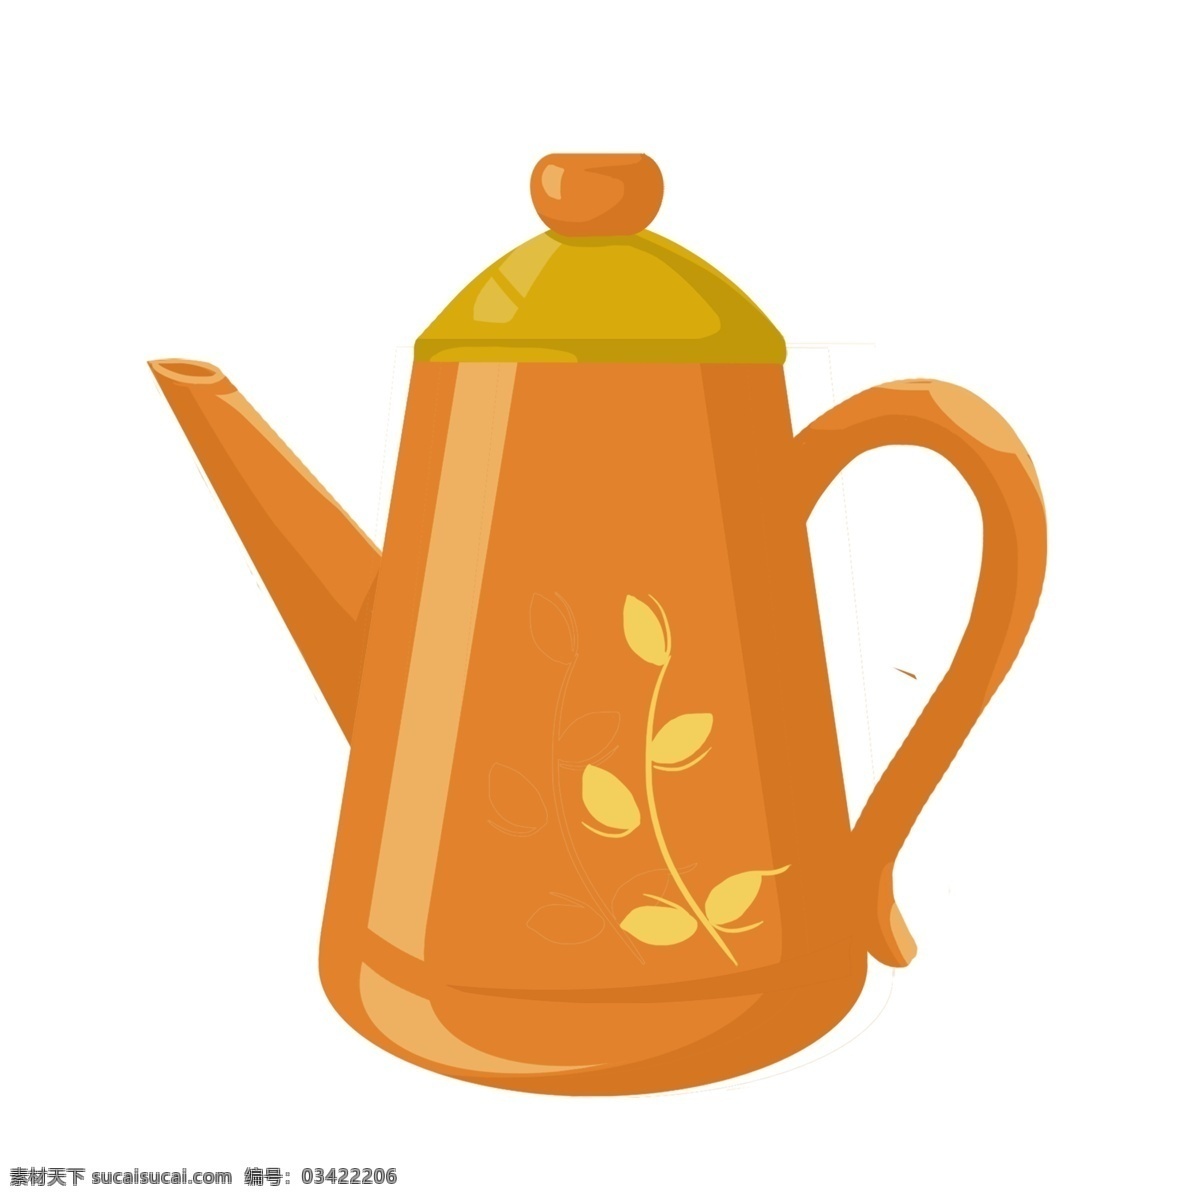 清明节 手绘 古风 茶具 元素 茶壶 紫砂壶